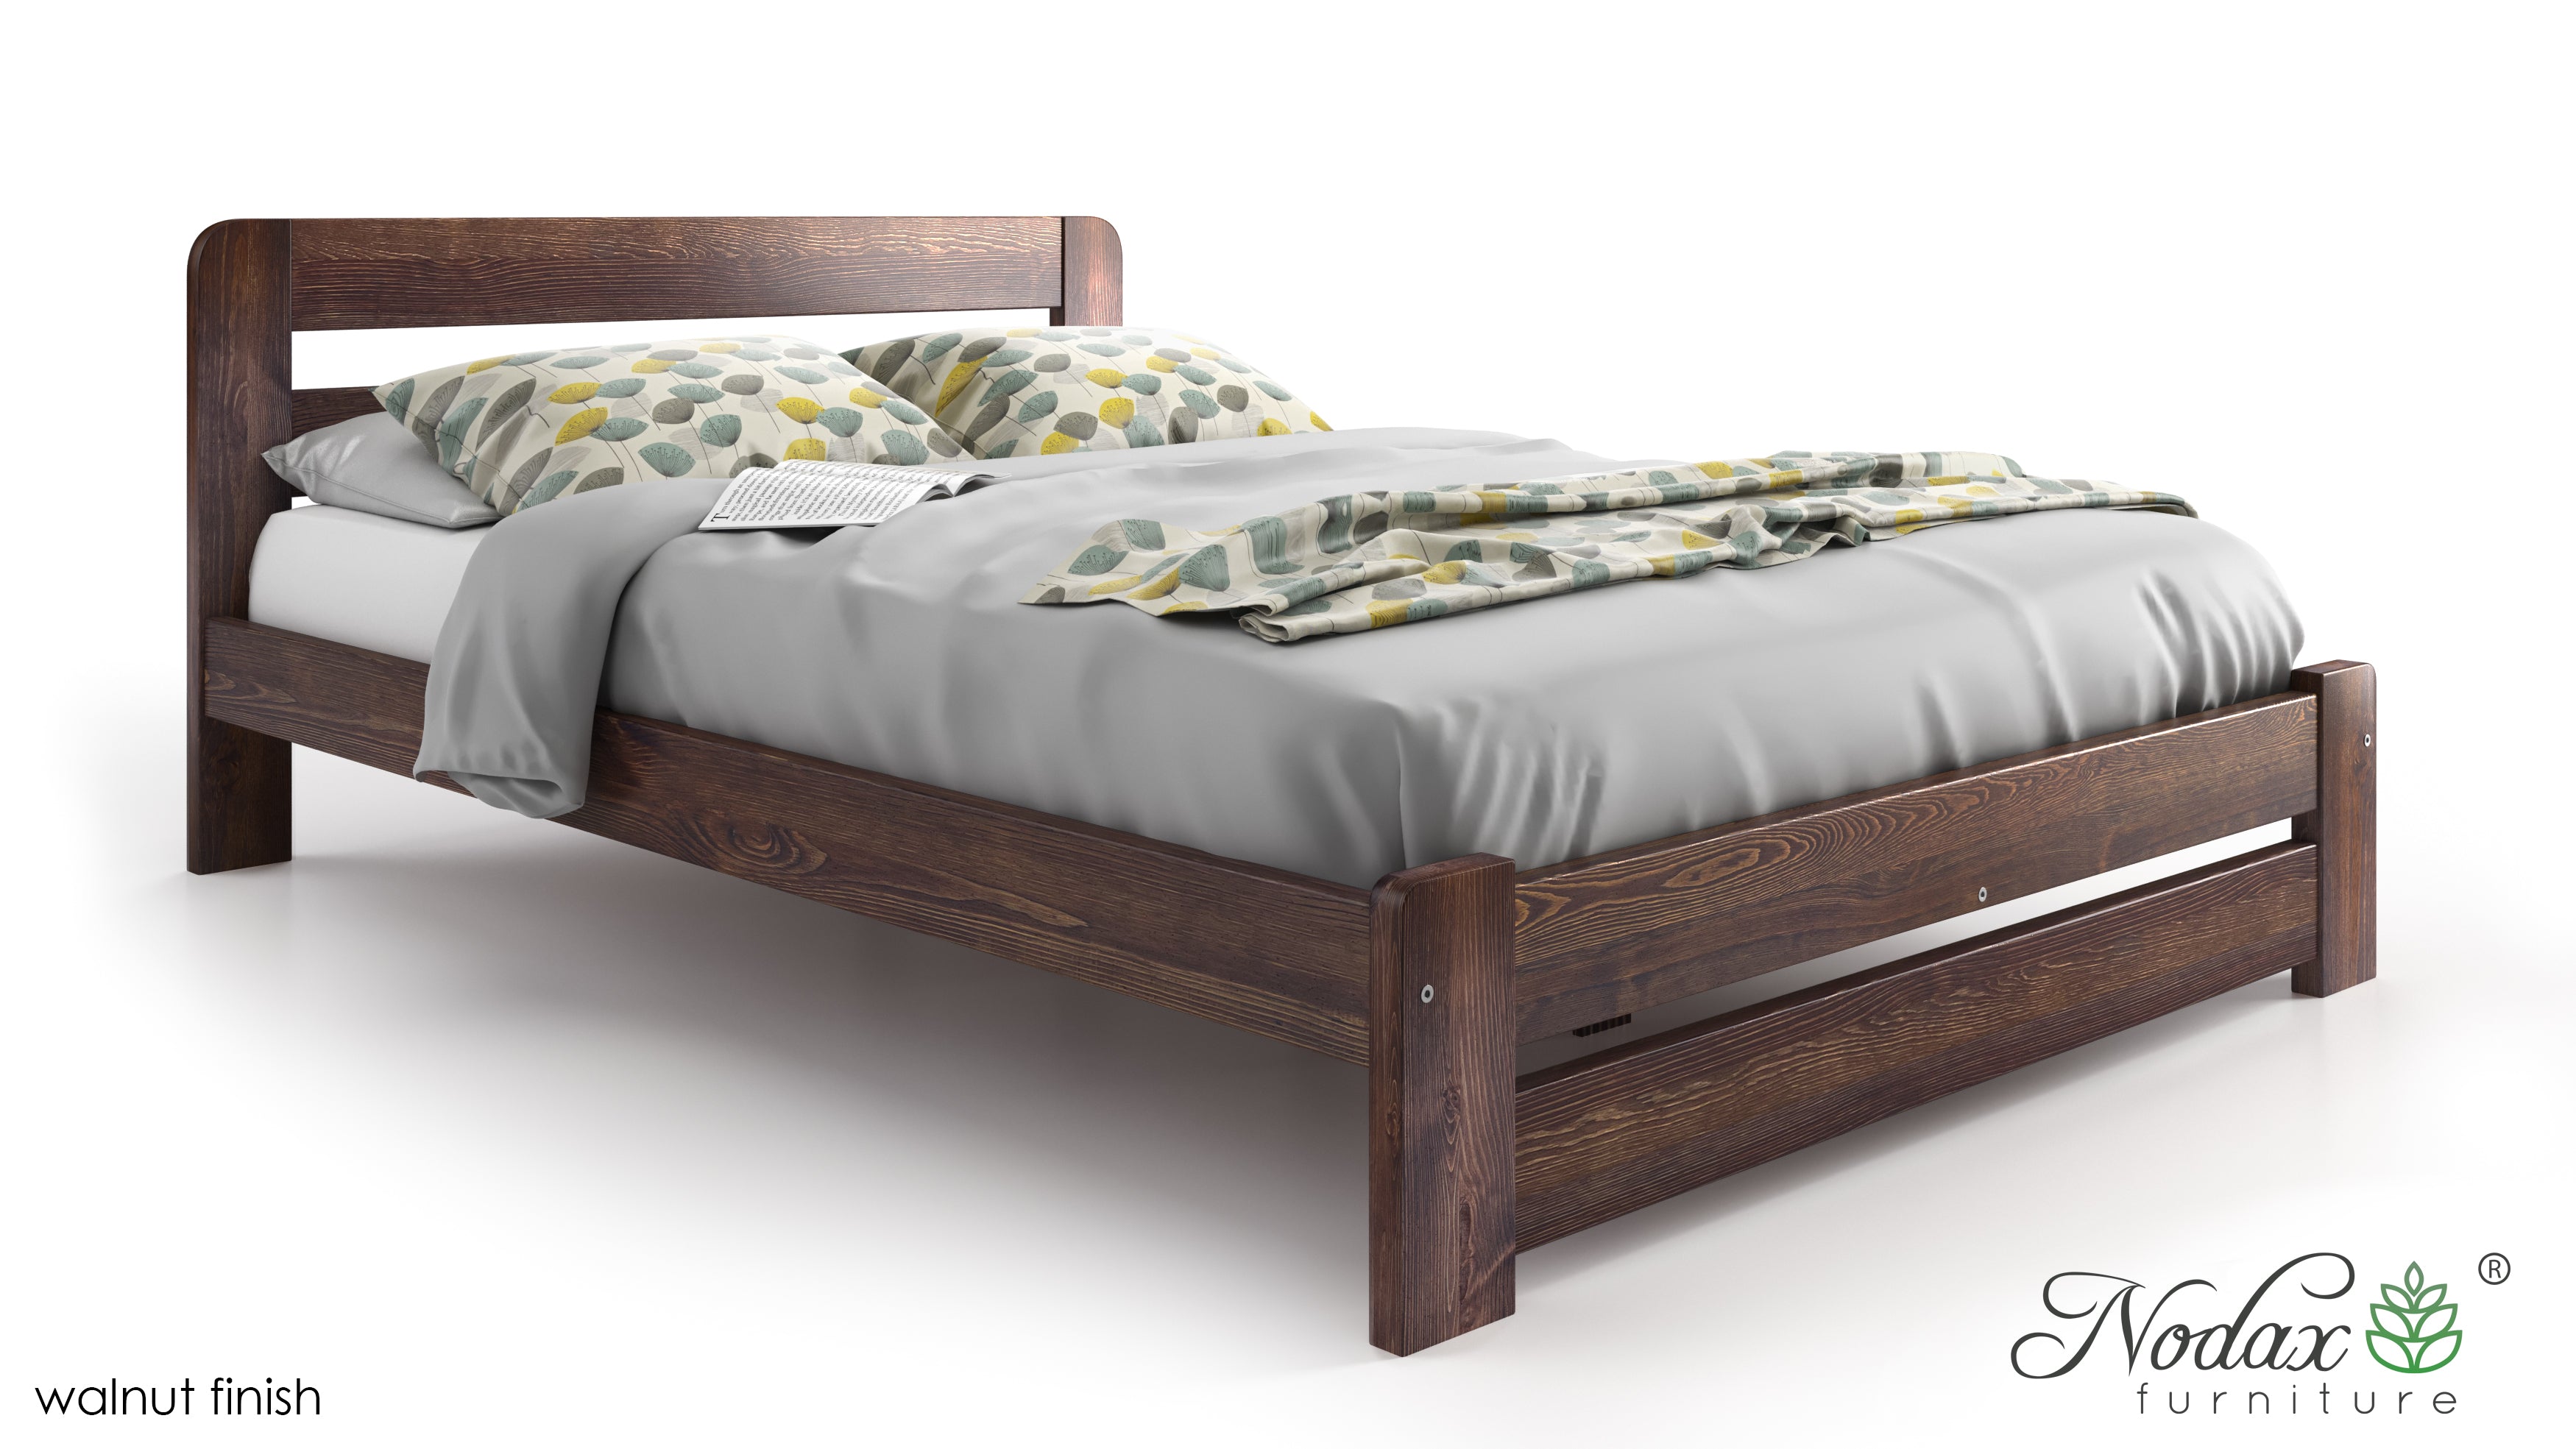 Wooden-bed-frame-Aurora-beds-online-walnut